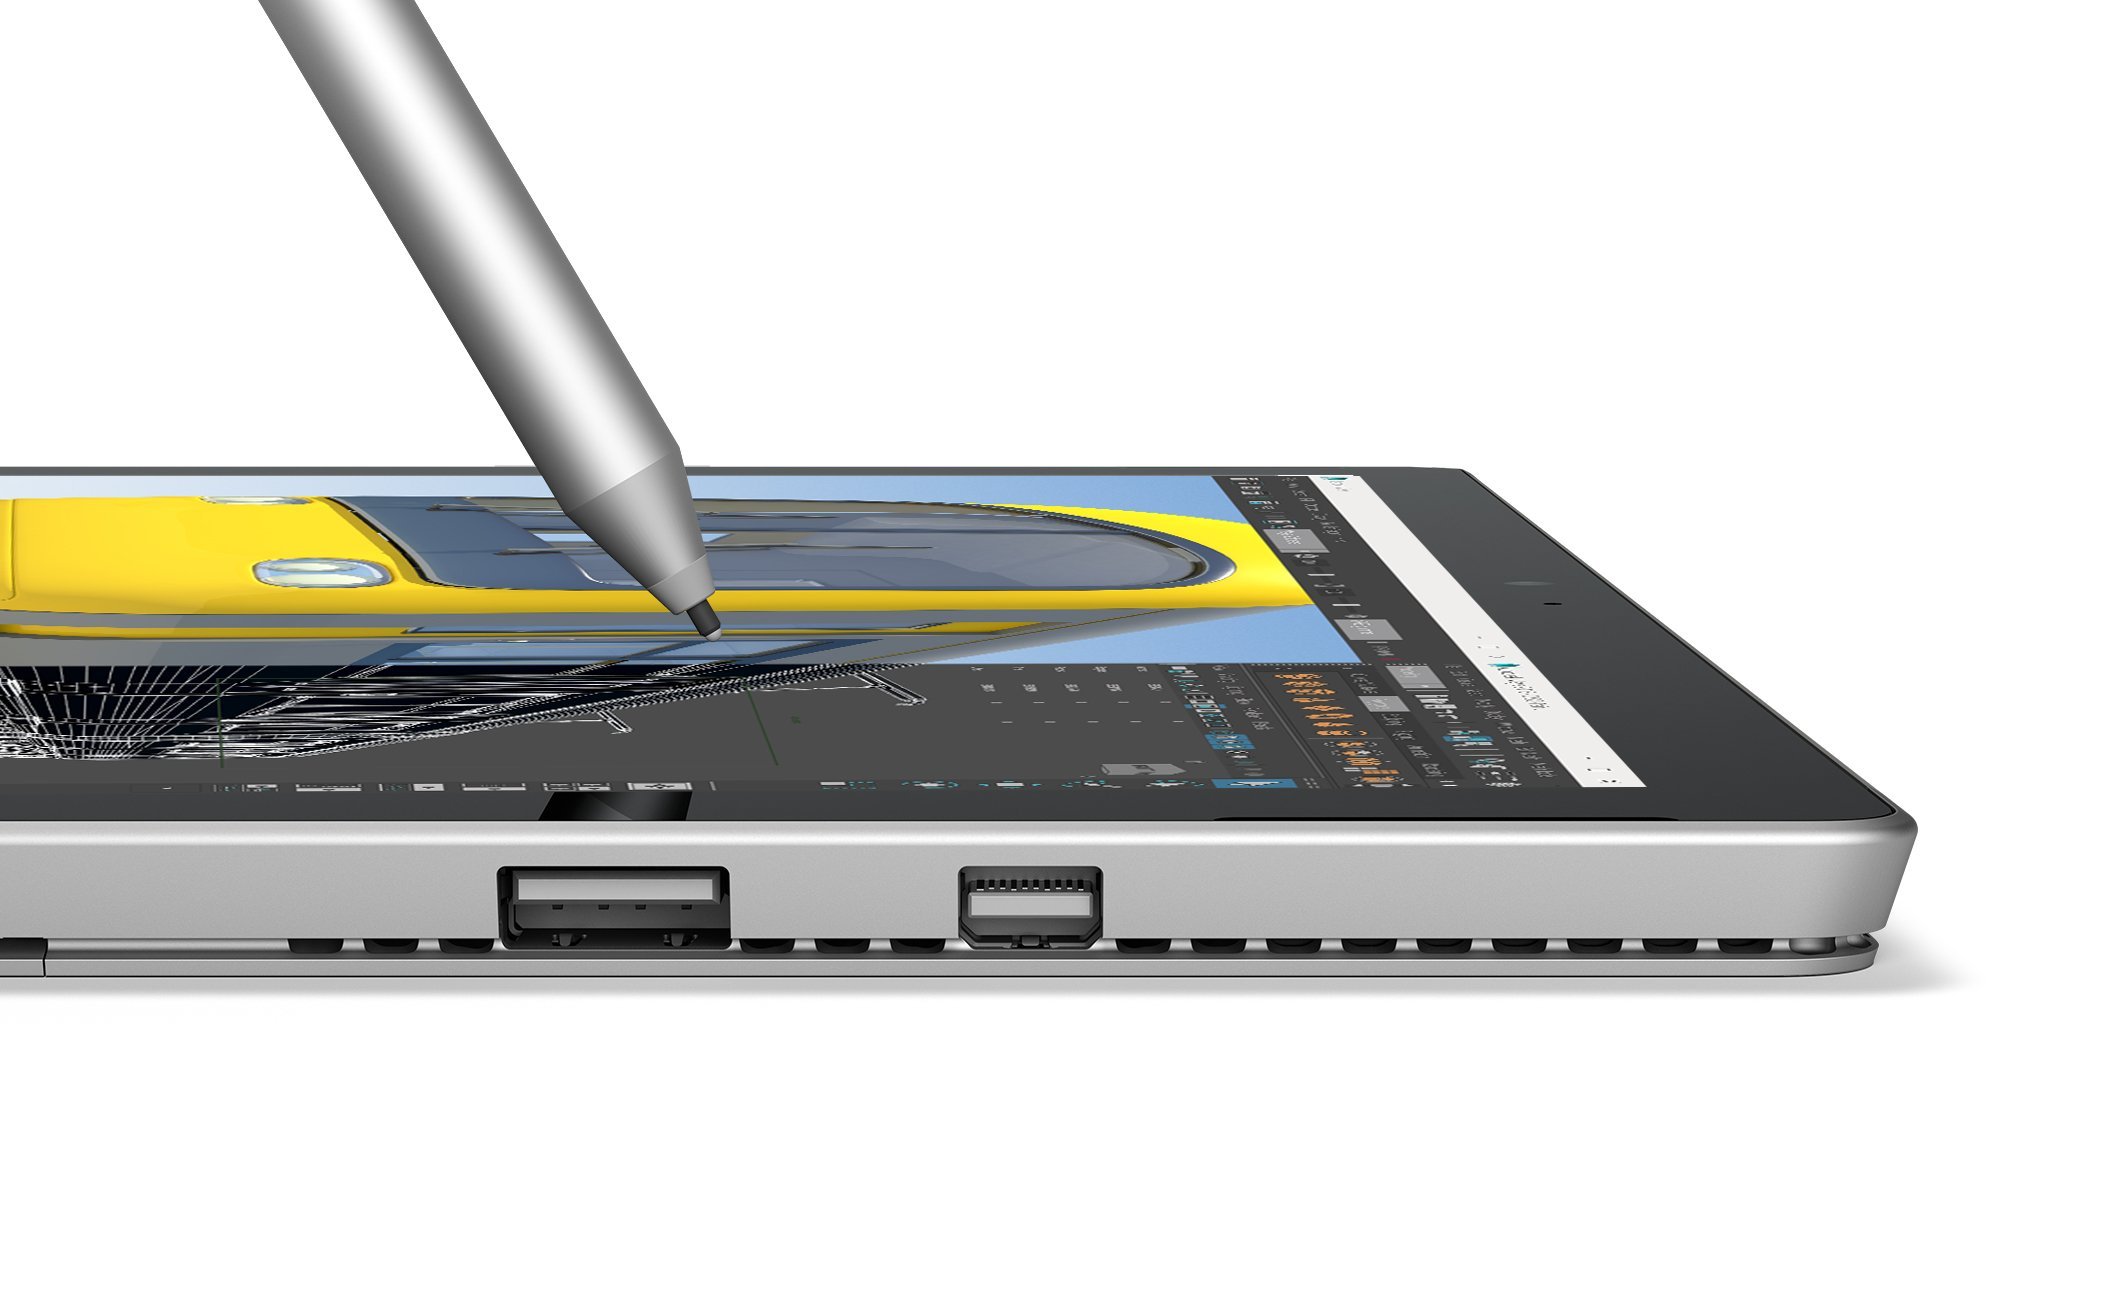 Microsoft Surface Pro 4 (256 GB, 16 GB RAM, Intel Core i7e) (Renewed)